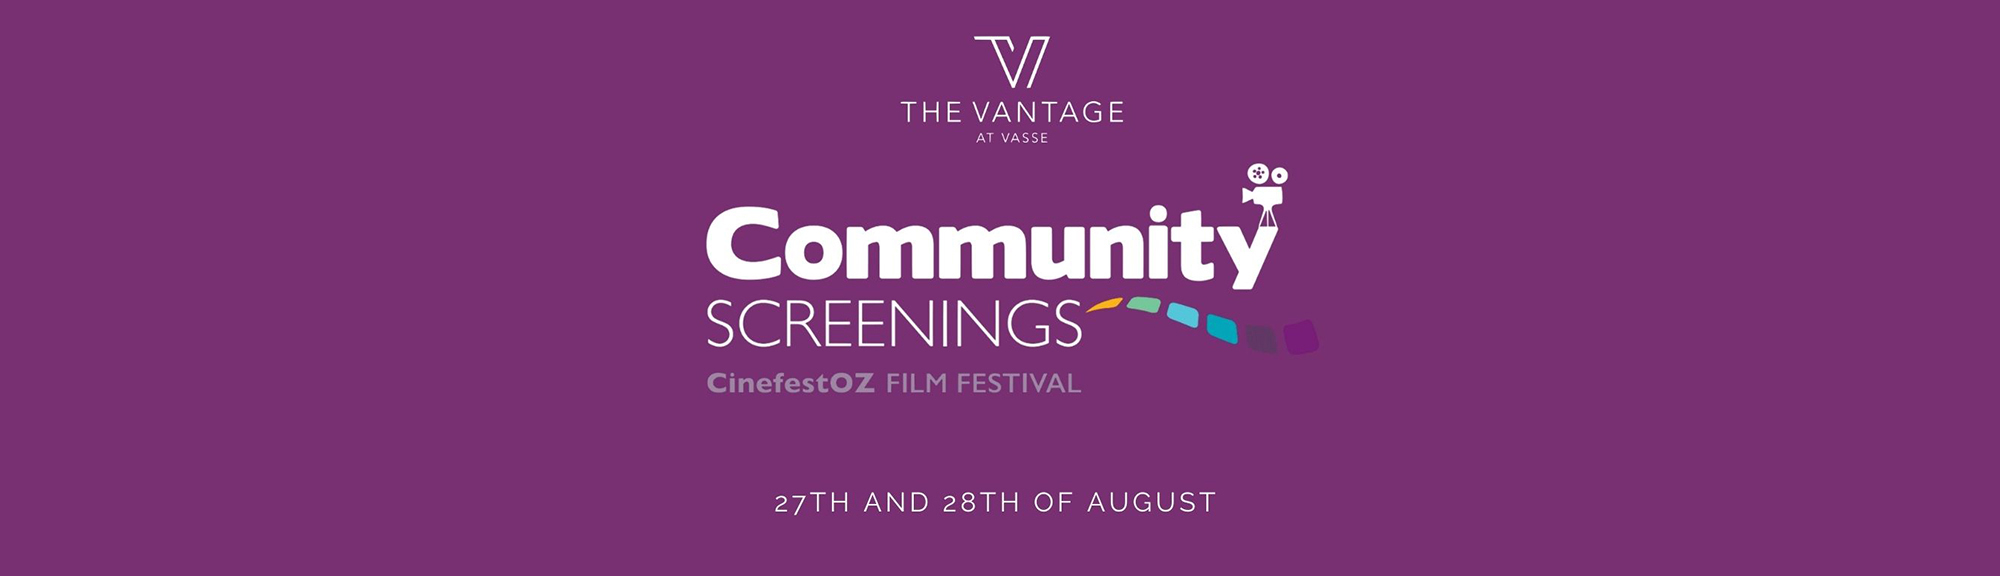 Community Cinema Screenings